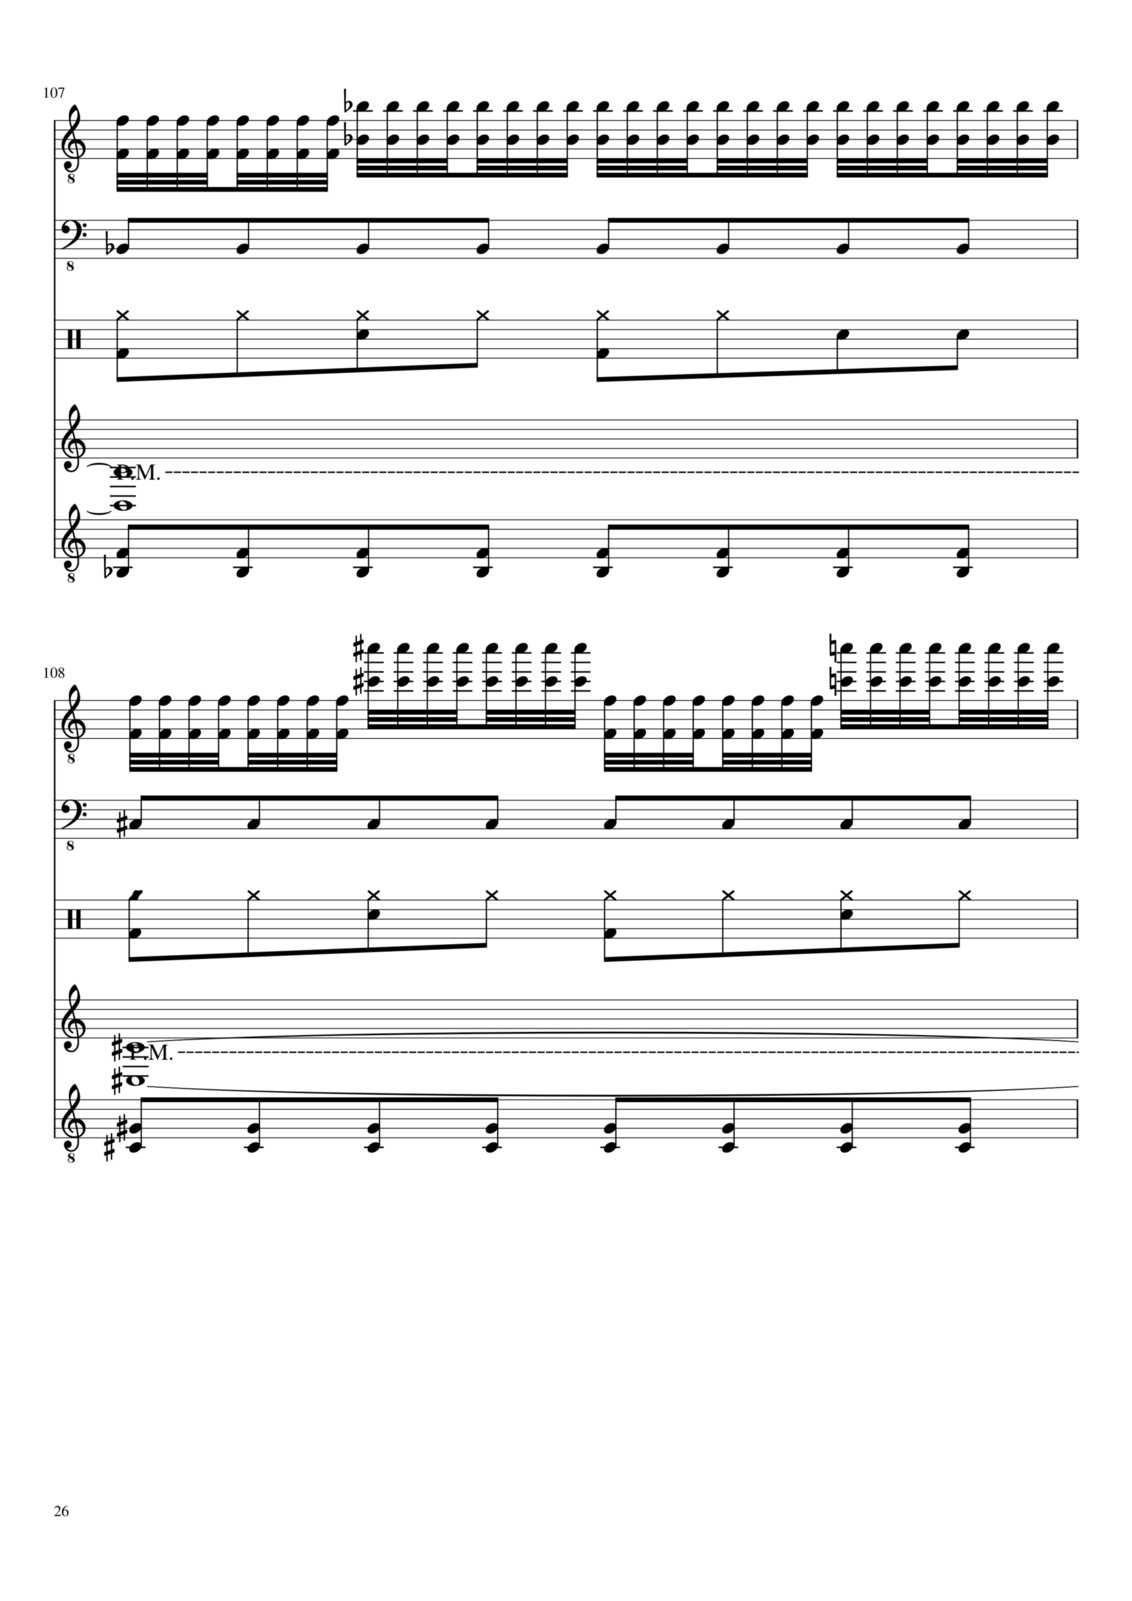 Vechnaya prizrachnaya vstrechnaya slide, Image 26